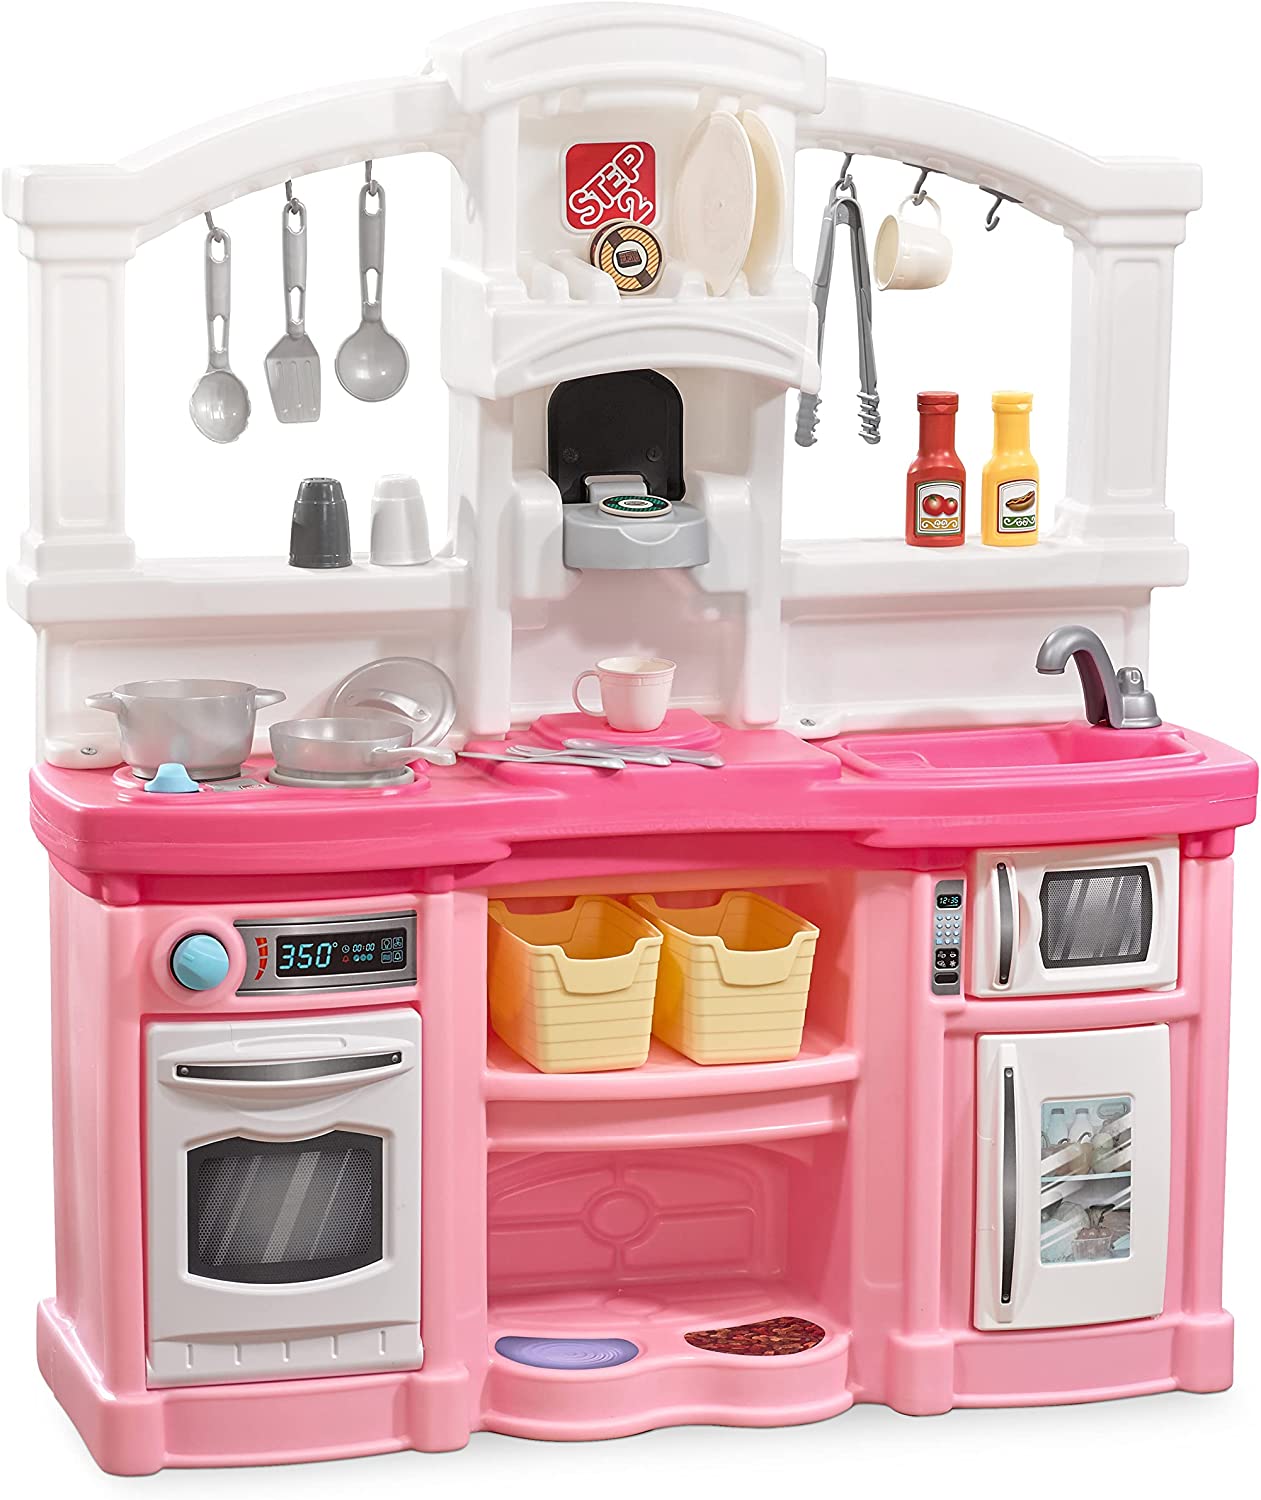 pink-kitchenware  Pink kitchen, Pink kitchen decor, Pink kitchen